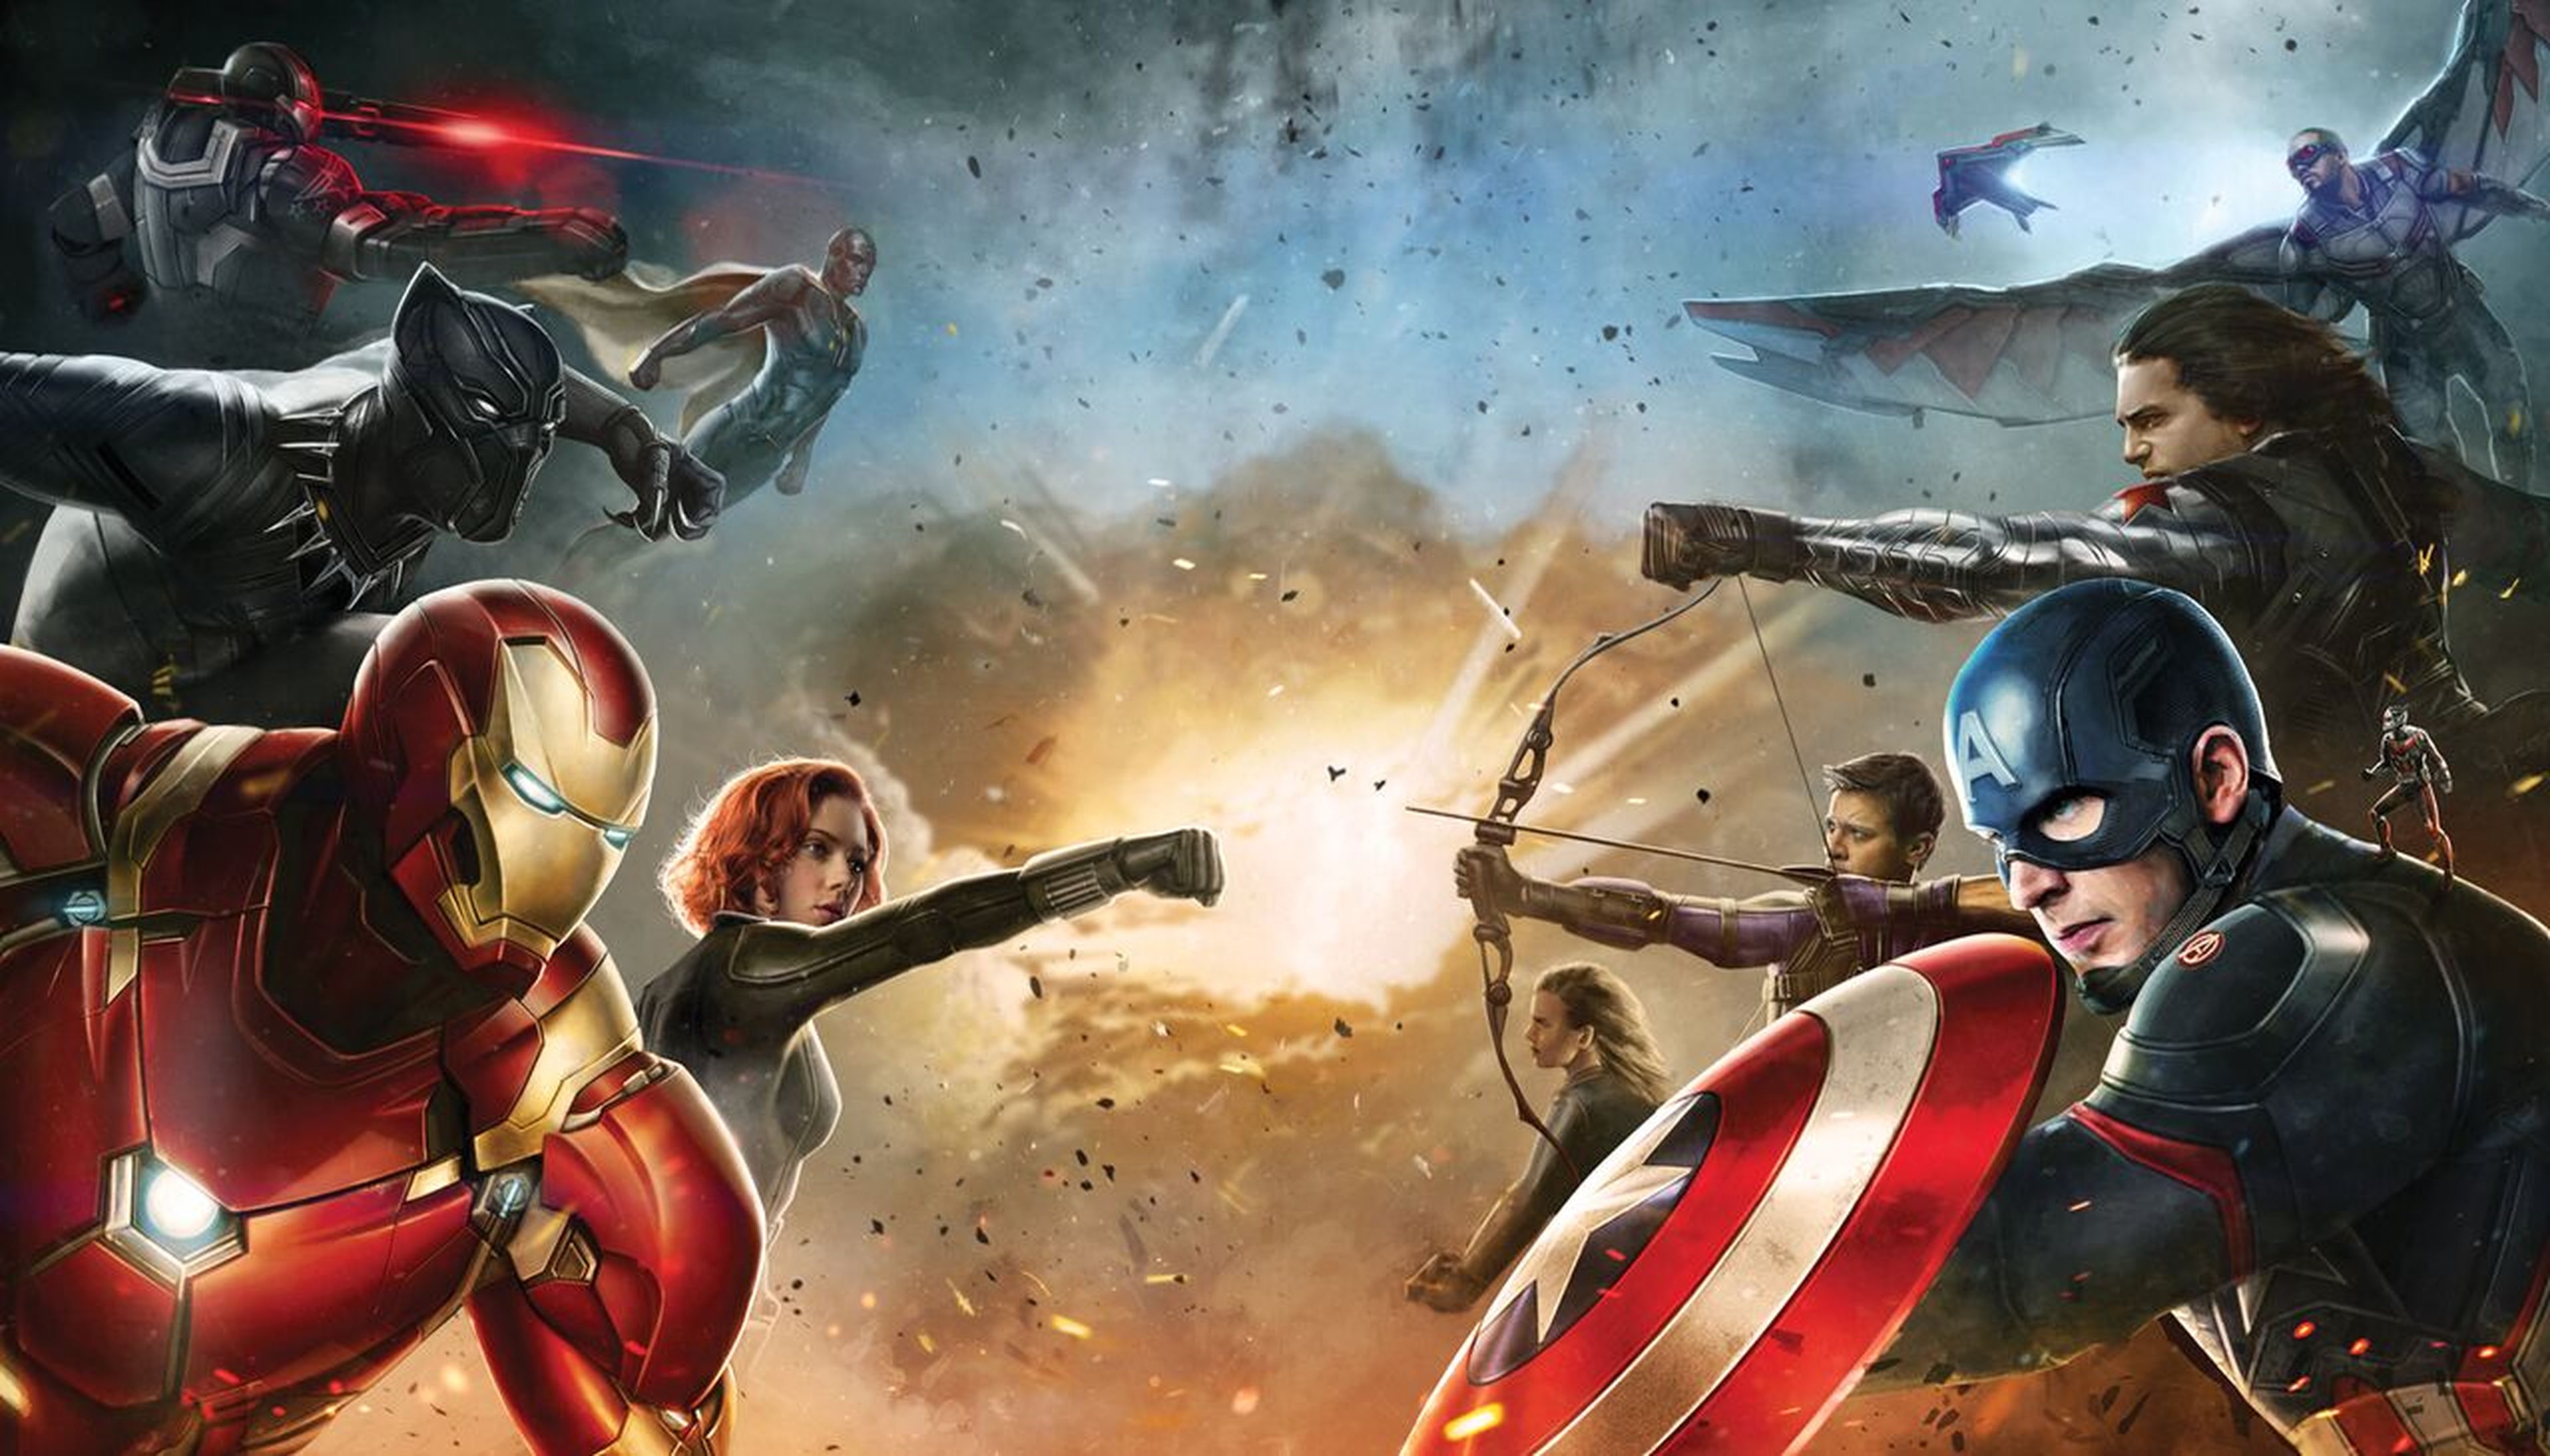 Capitán América: Civil War - Nuevo tráiler internacional con imágenes inéditas